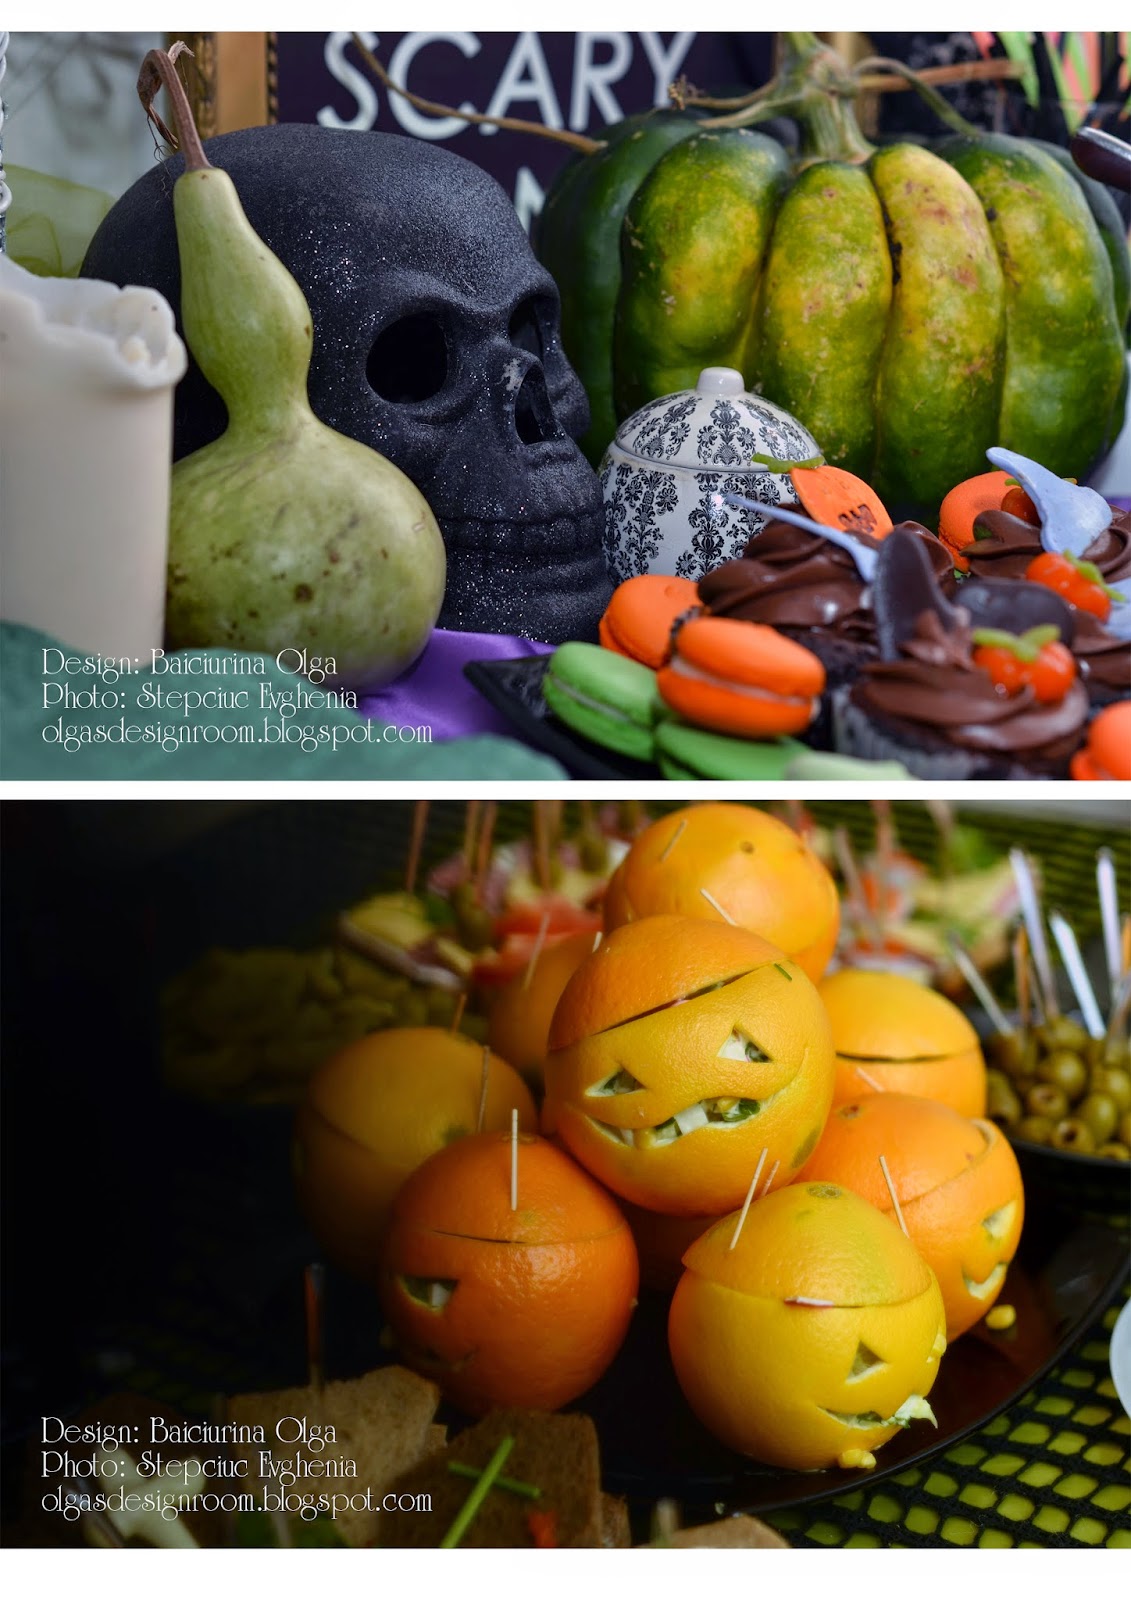 Ольга Байчурина: Halloween table decoration - Оформление домашней вечеринки на Хэллоуин